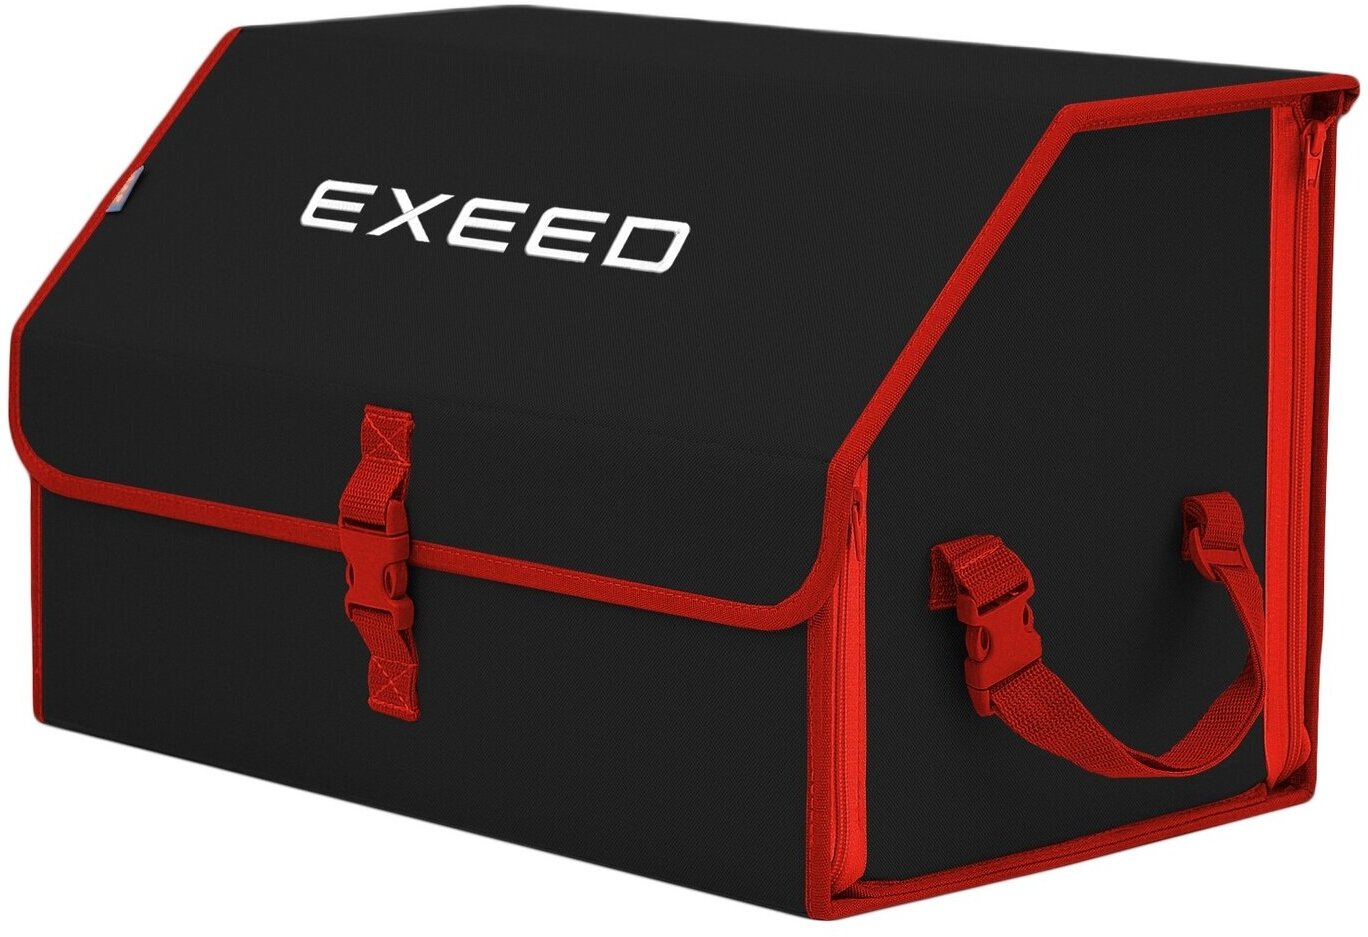 Органайзер-саквояж в багажник "Союз" (размер L). Цвет: черный с красной окантовкой и вышивкой Exeed (Эксид).